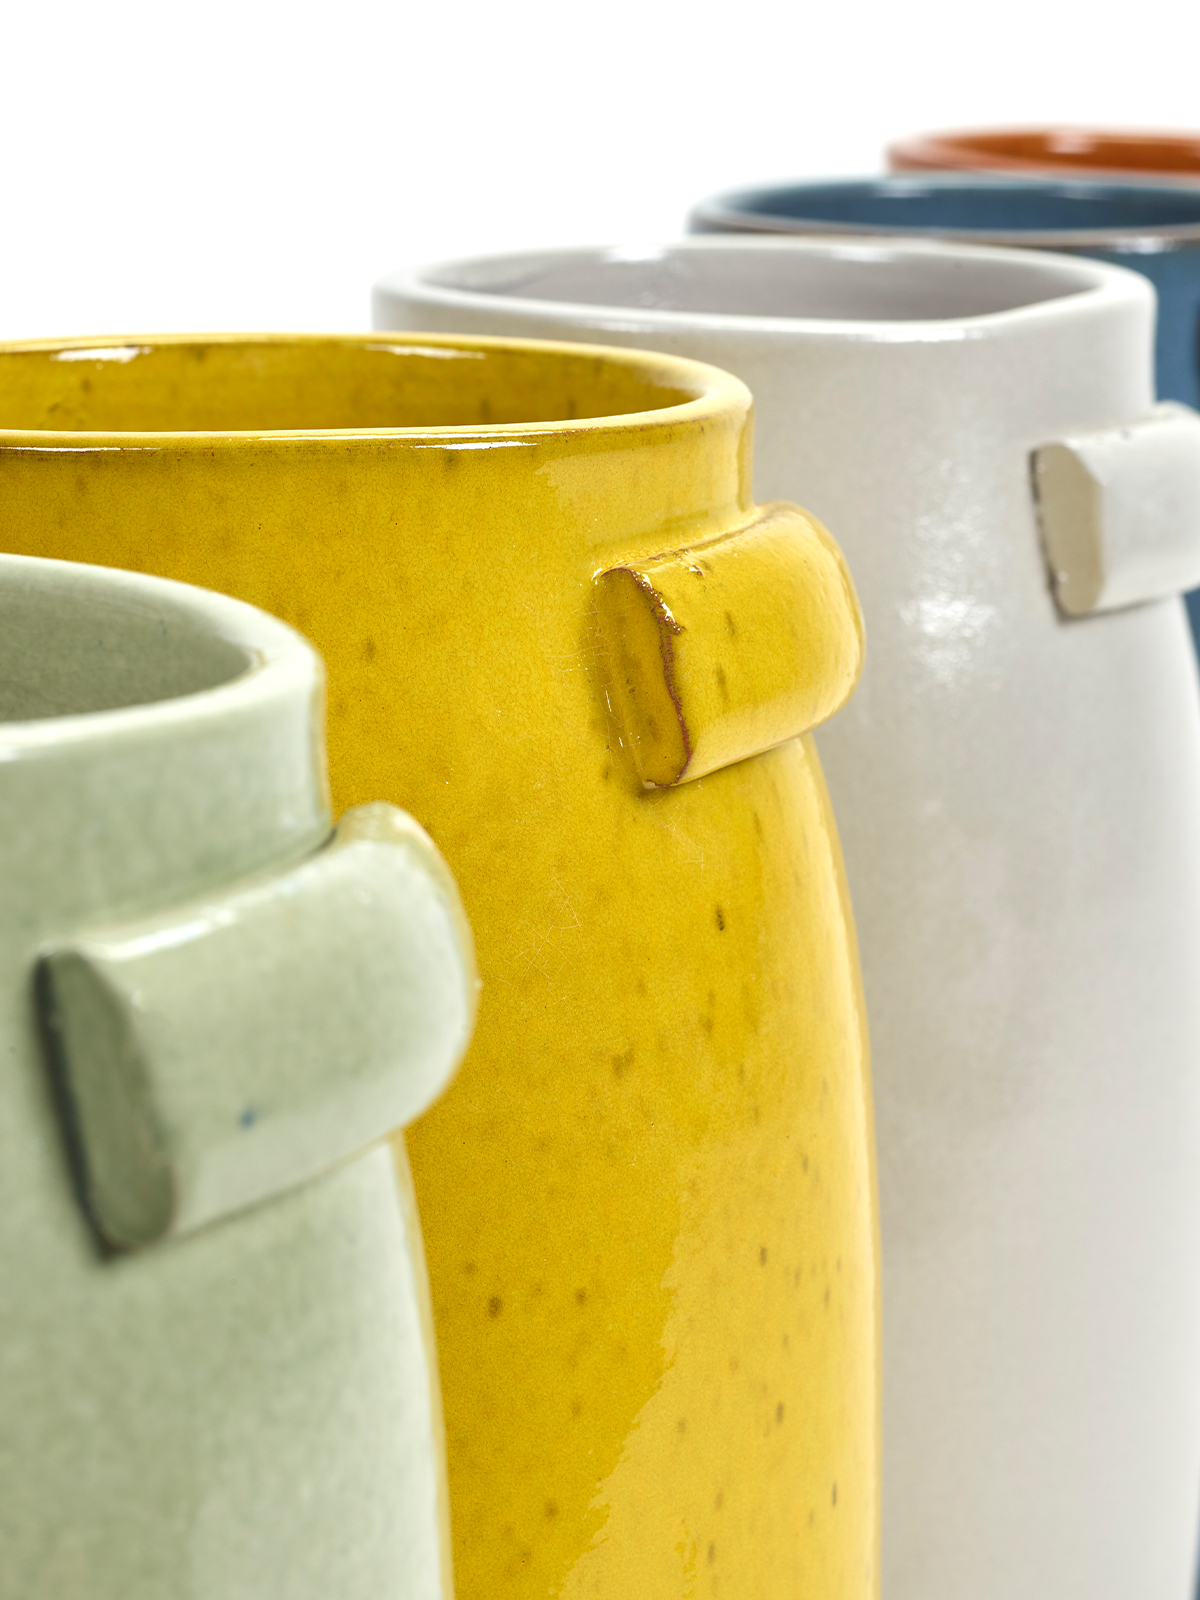 Jars Pottery von Serax